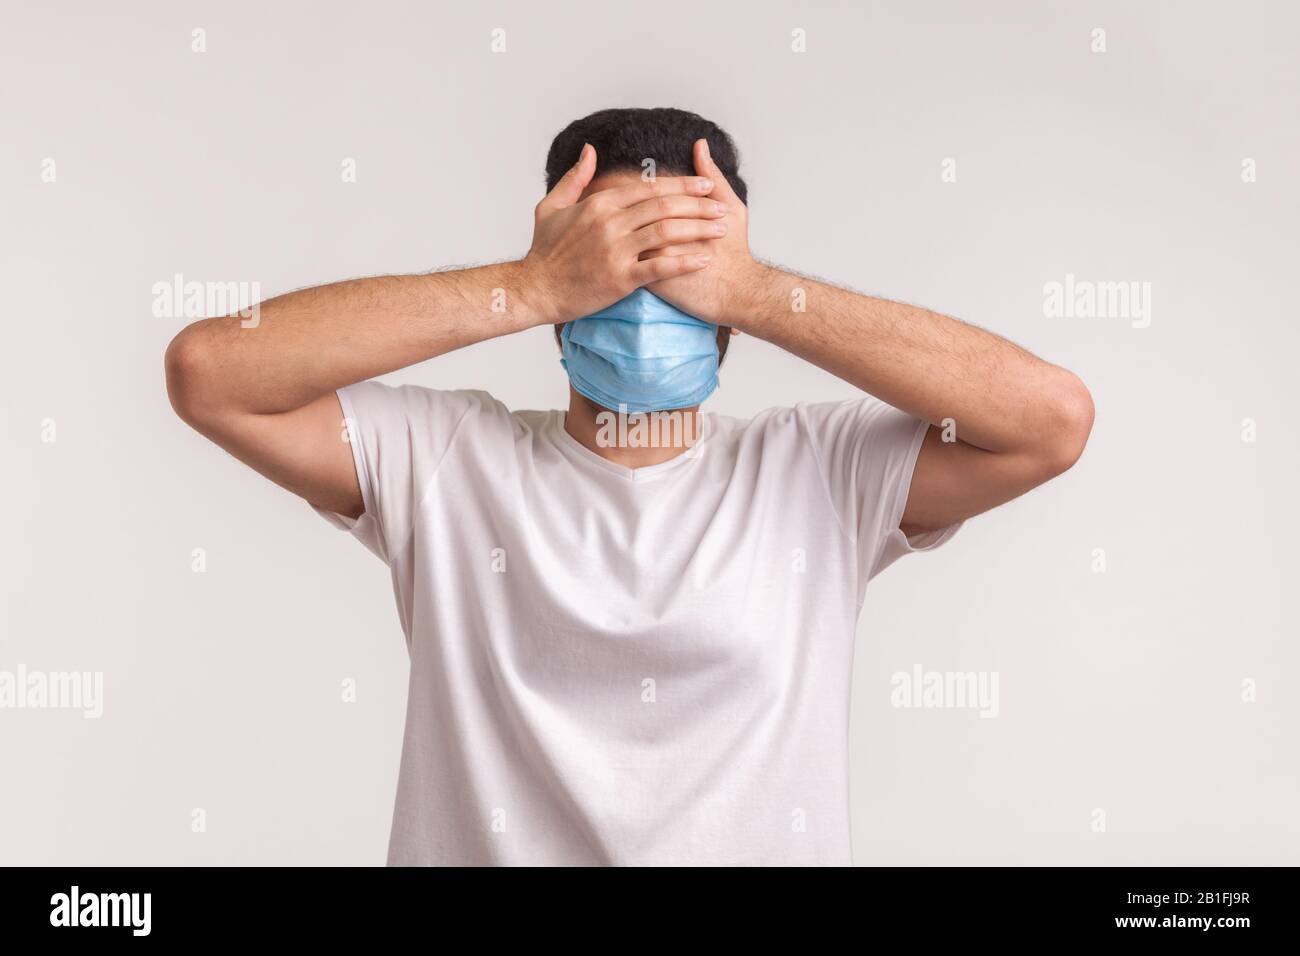 Paura di malattie contagiose, coronavirus. Uomo in maschera igienica che copre gli occhi, paura di infezione, malattia respiratoria aerea come influenza, 2019-nCoV, Foto Stock